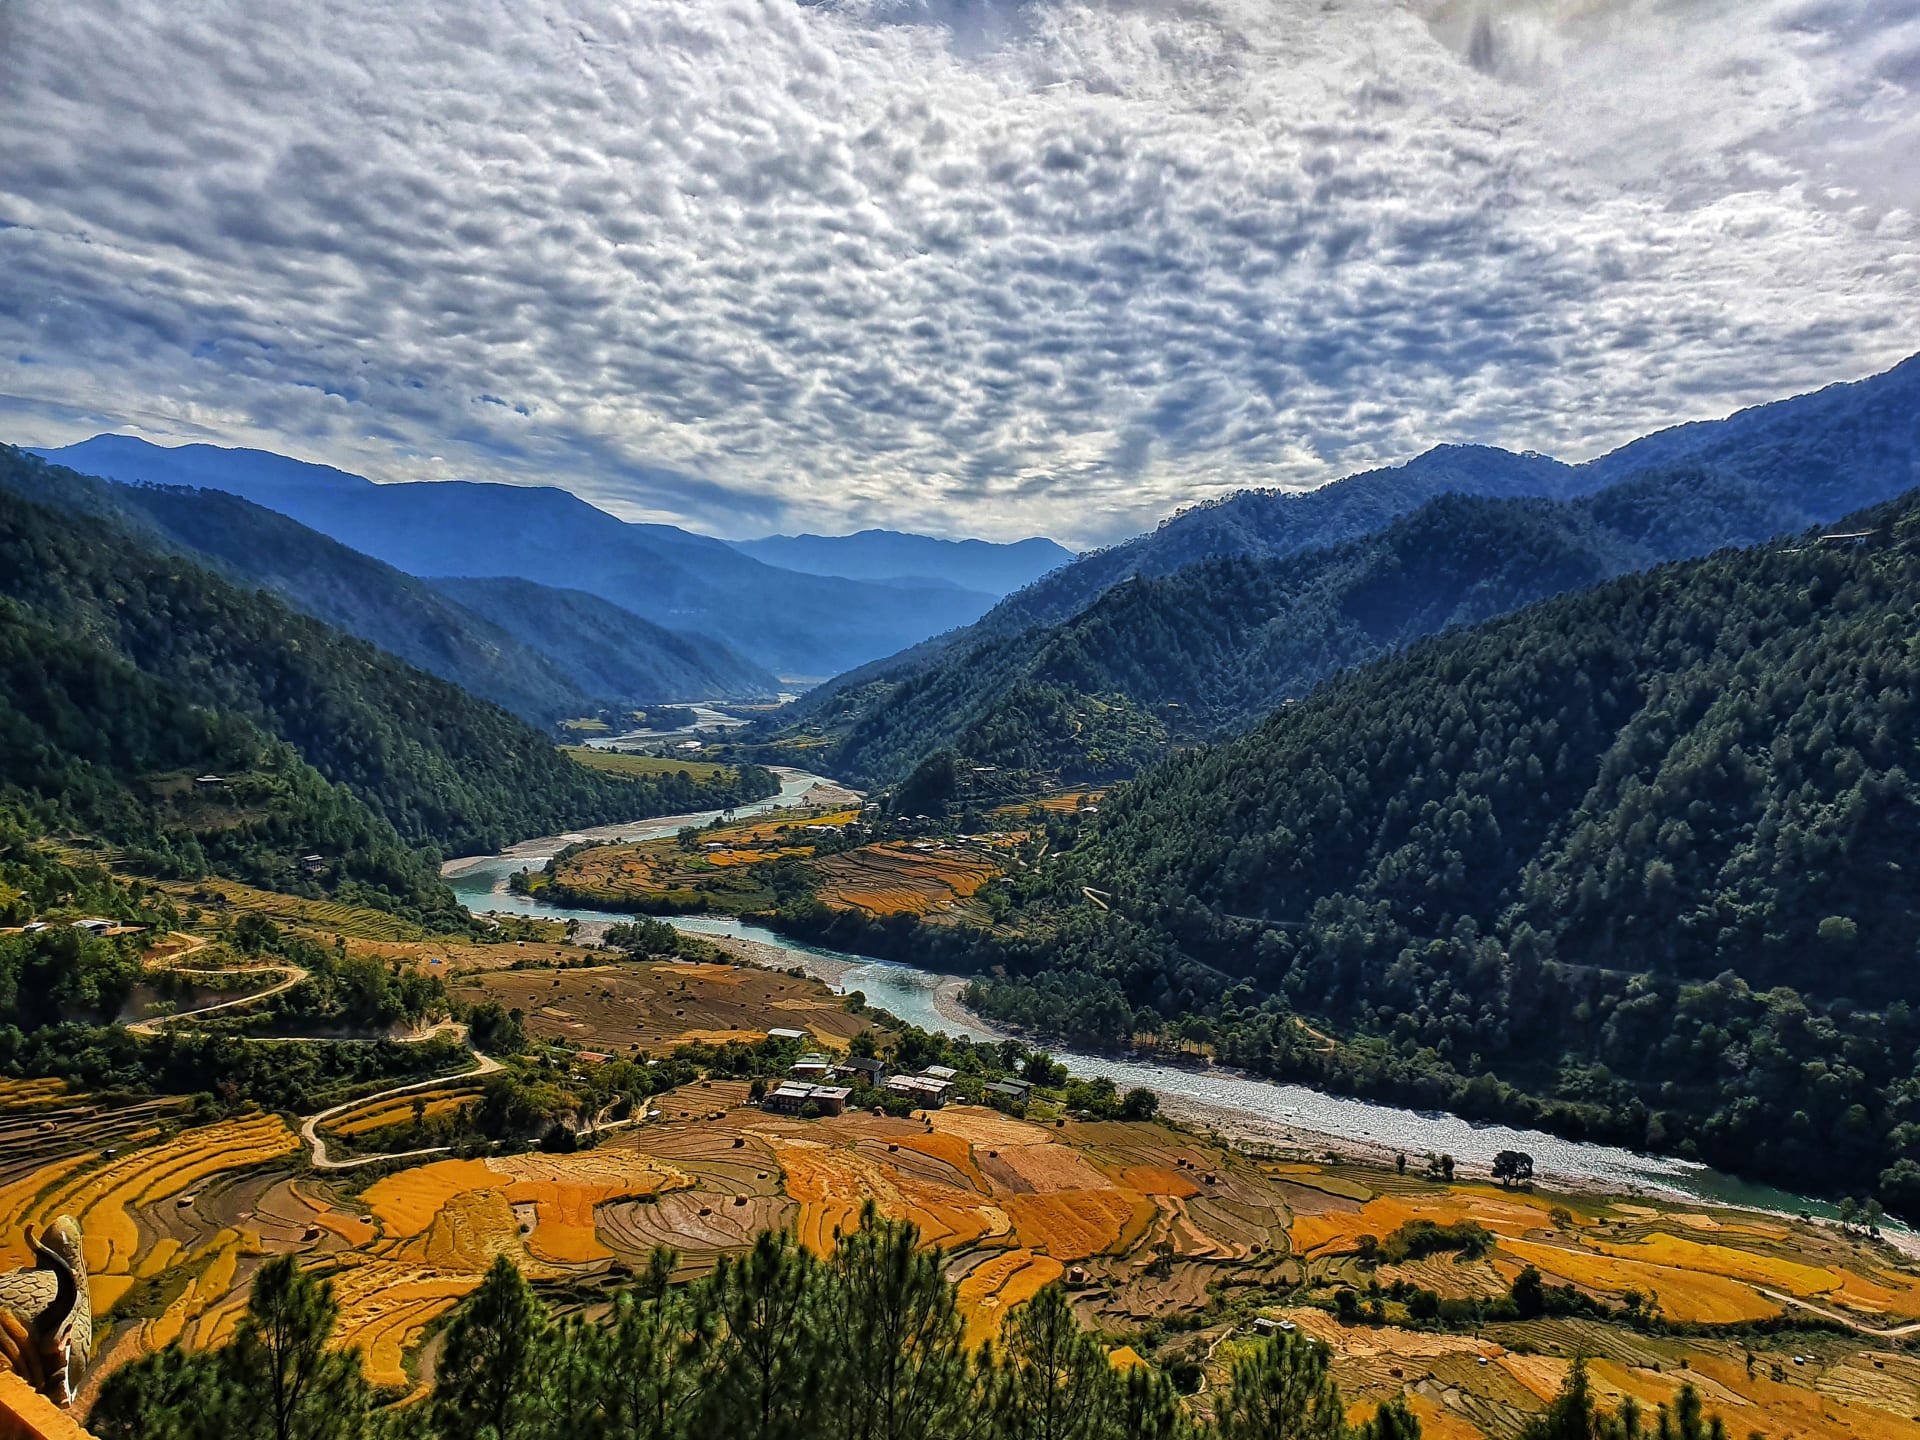 إعادة افتتاح مسار قديم في بوتان لأول مرة منذ 60 عامًا